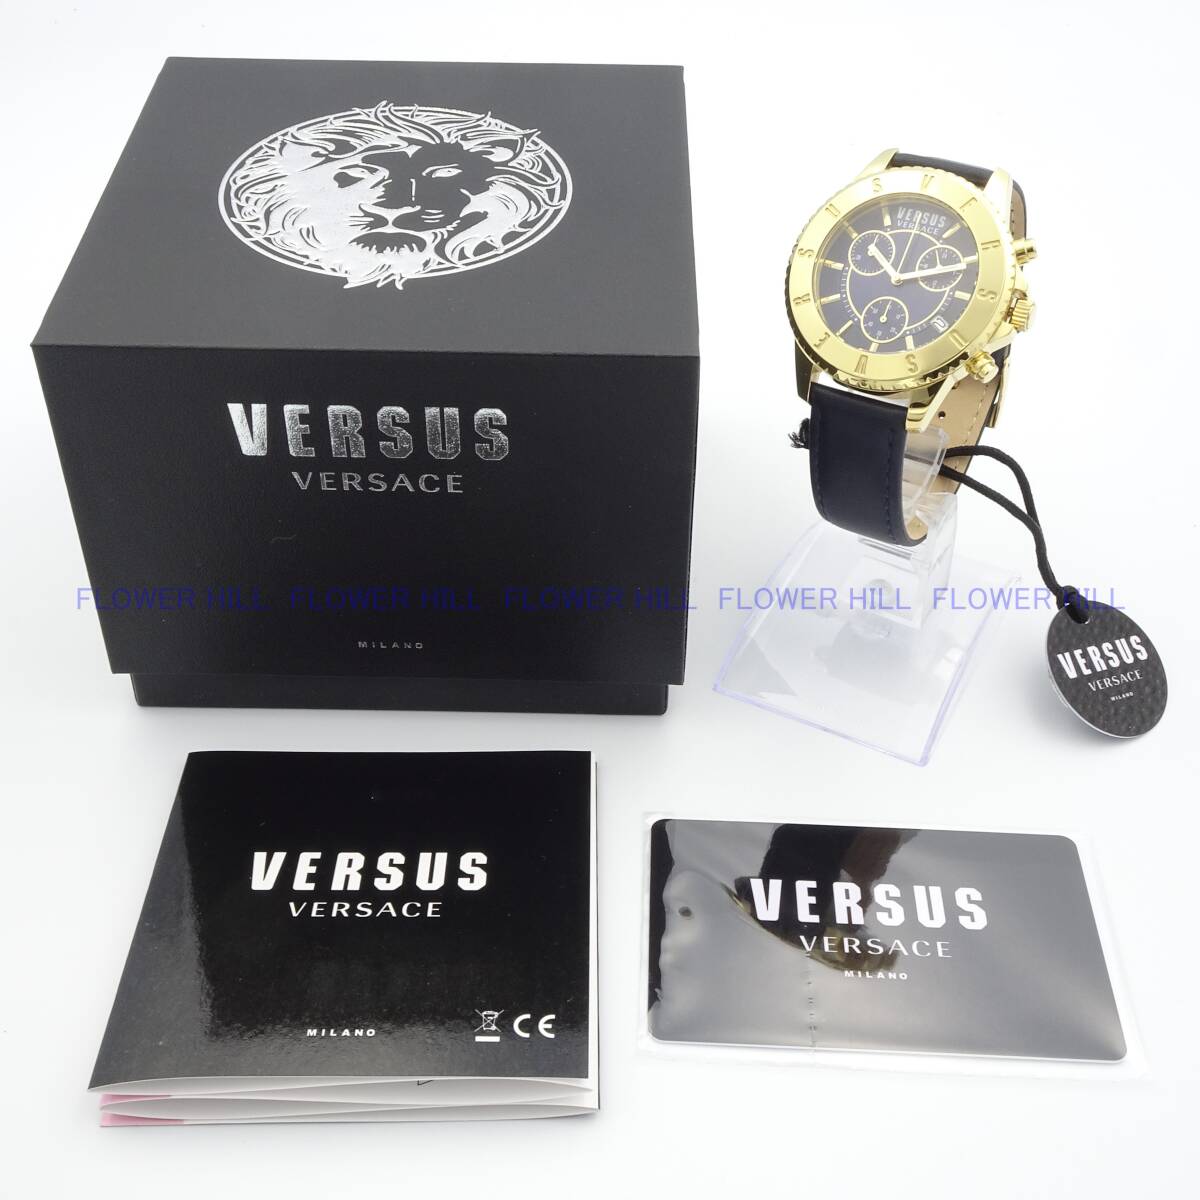 【新品・送料無料】VERSUS VERSACE ヴェルサスヴェルサーチ 腕時計 メンズ クォーツ VSPG2619 ブルー・ゴールド レザーバンド